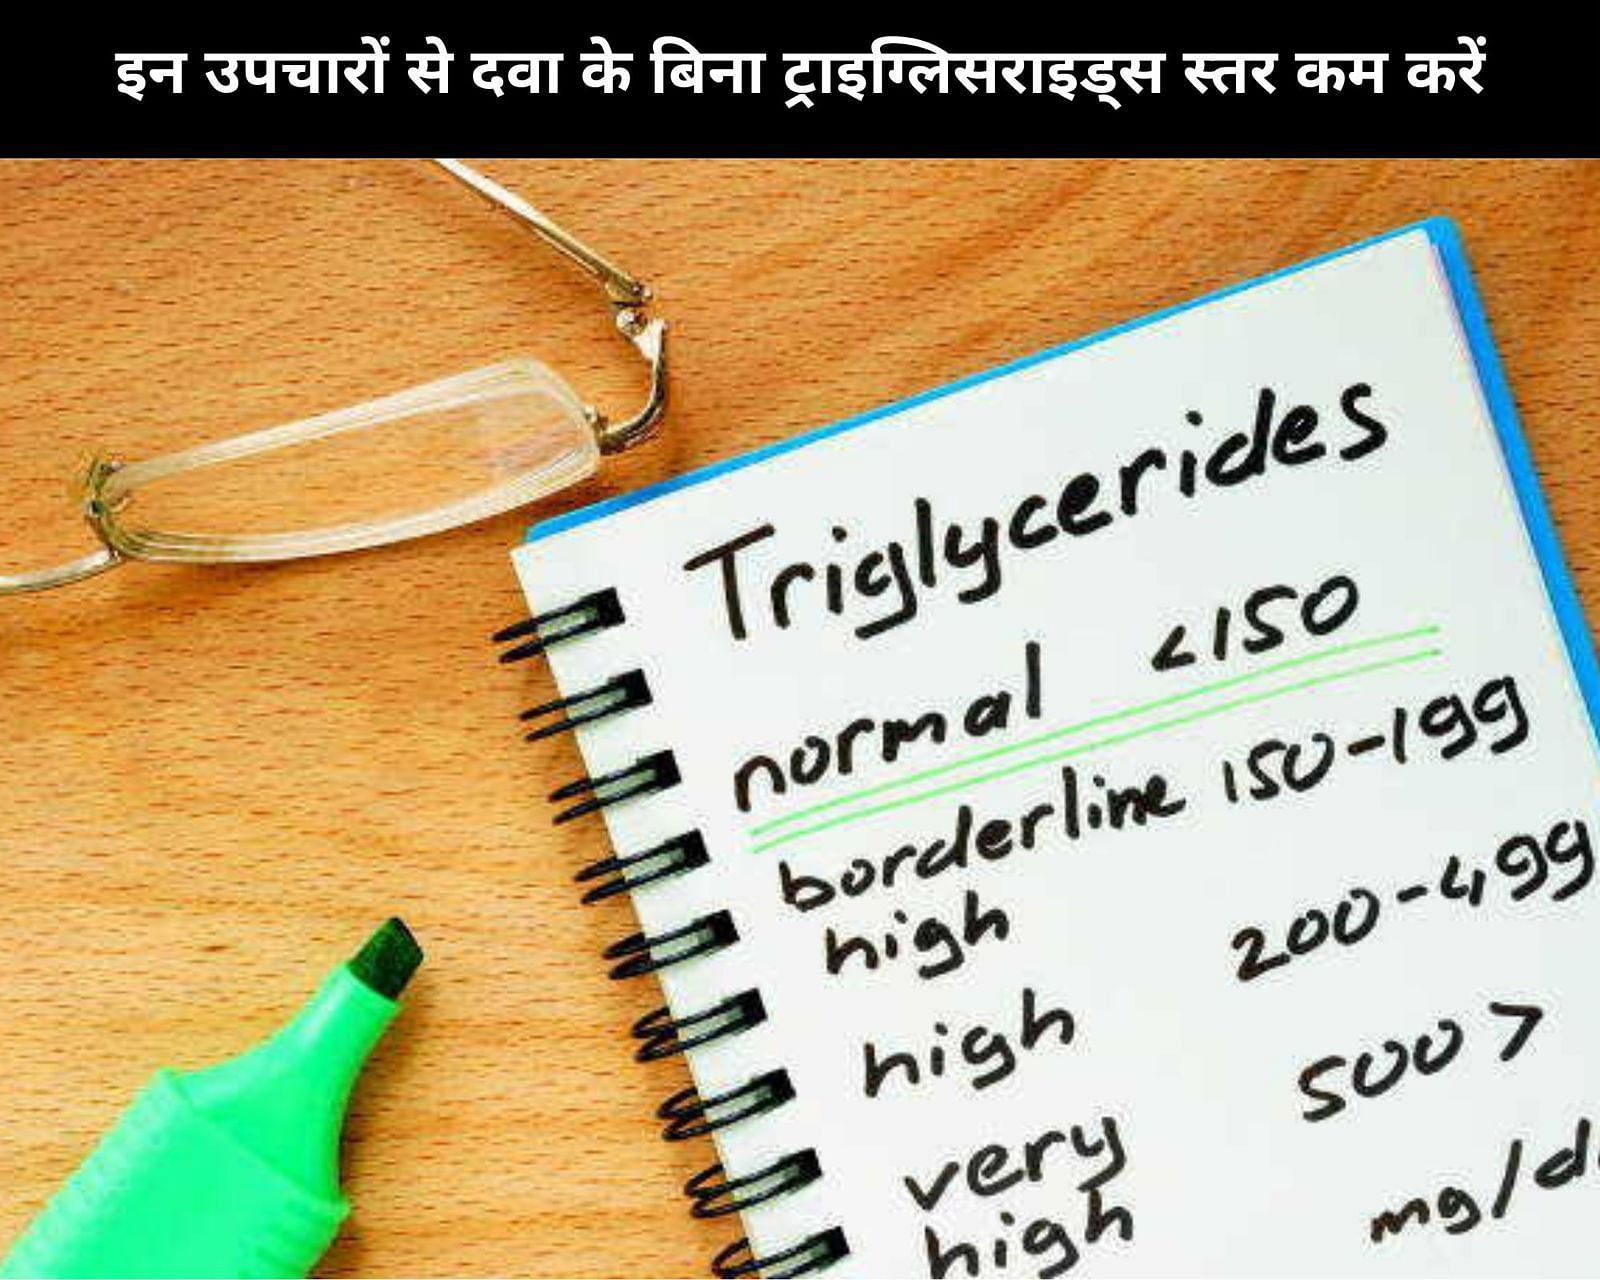 इन 5 उपचारों से दवा के बिना ट्राइग्लिसराइड्स स्तर कम करें (फोटो - sportskeedaहिन्दी)